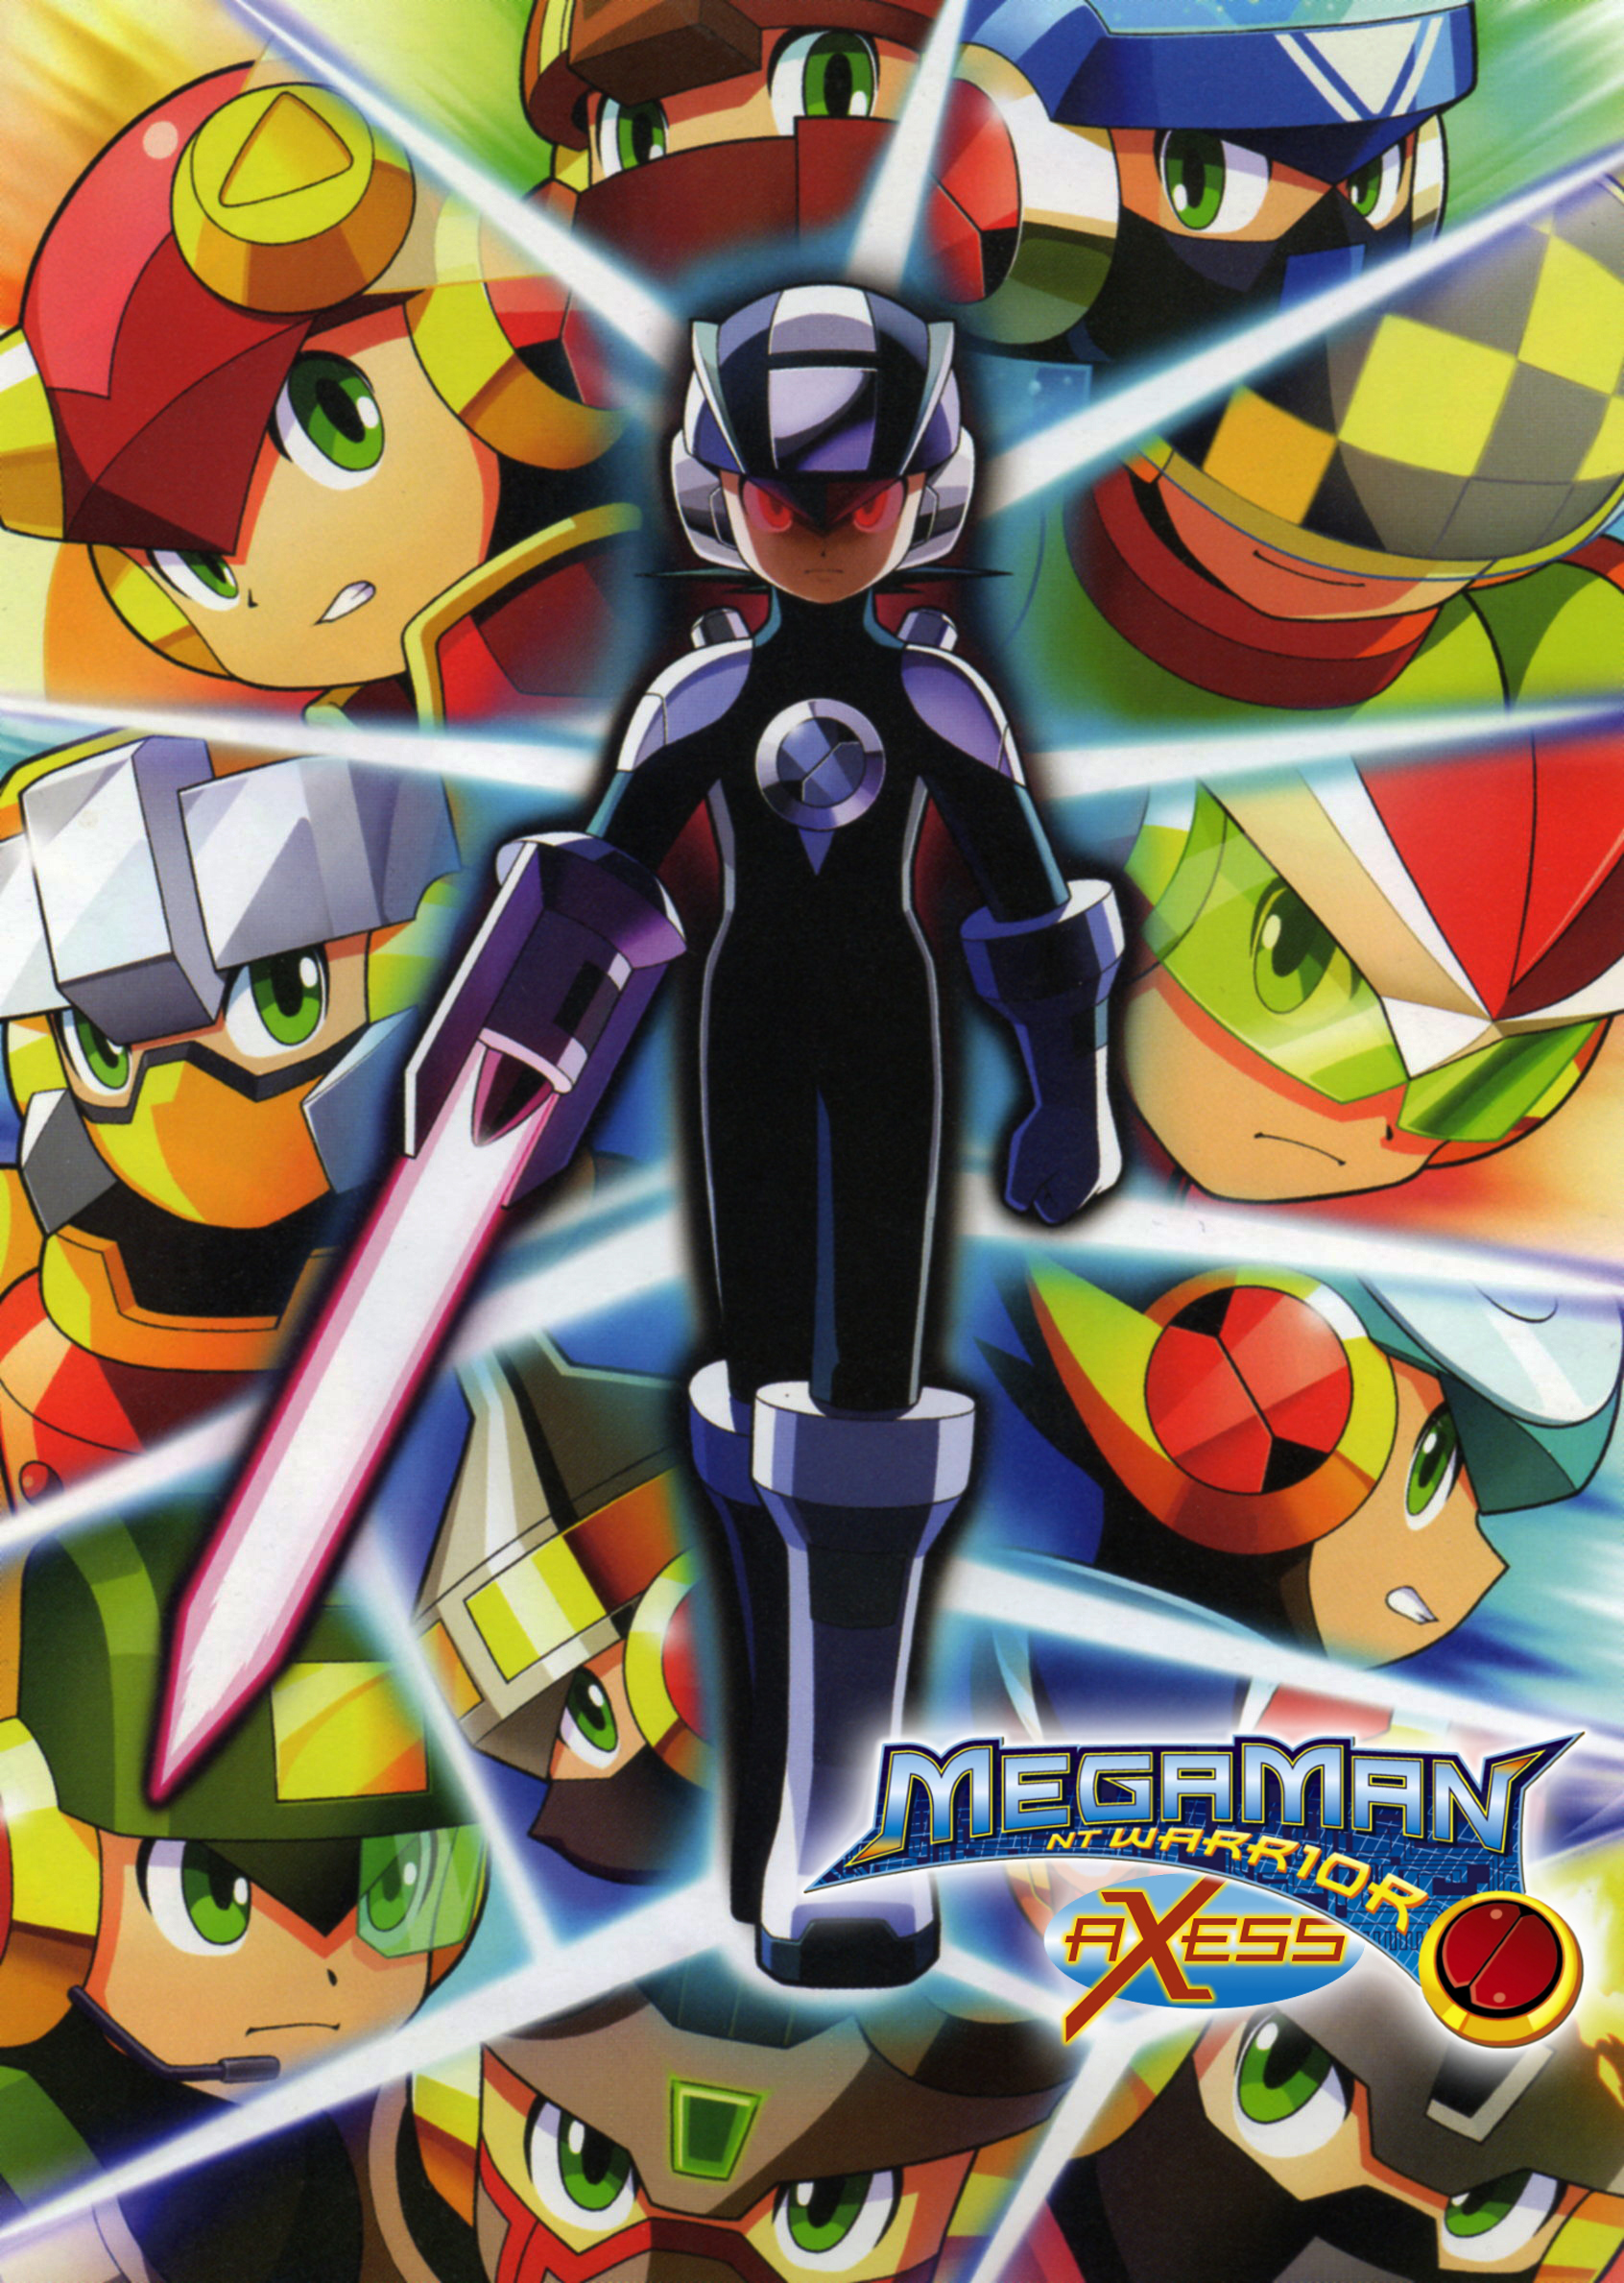 Megaman Legends | Mega man art, Mega man, Megaman series